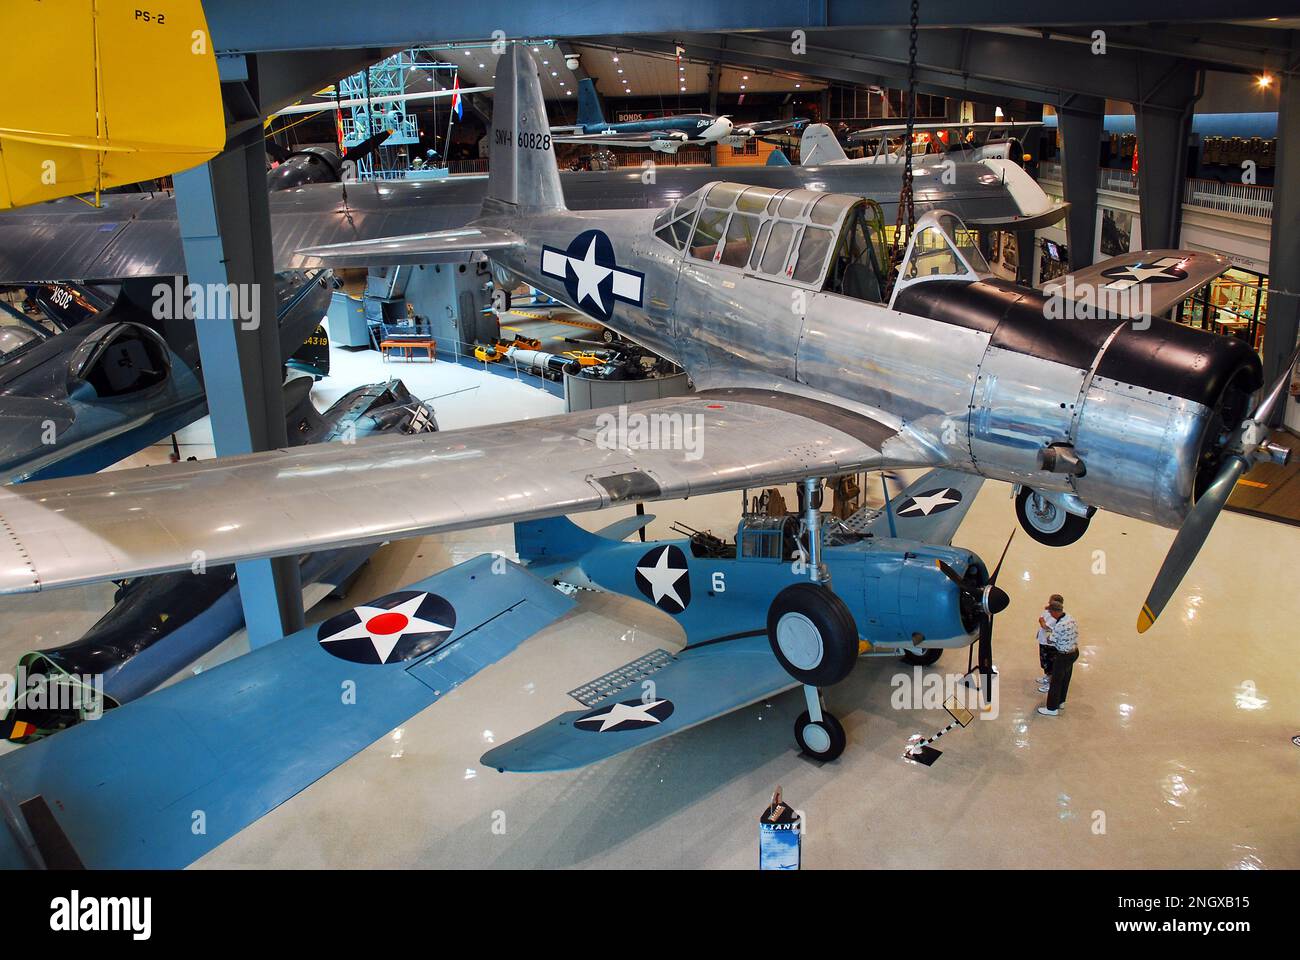 Les avions de l'époque de la Seconde Guerre mondiale sont exposés dans un musée de l'aviation de Pensacola, en Floride Banque D'Images